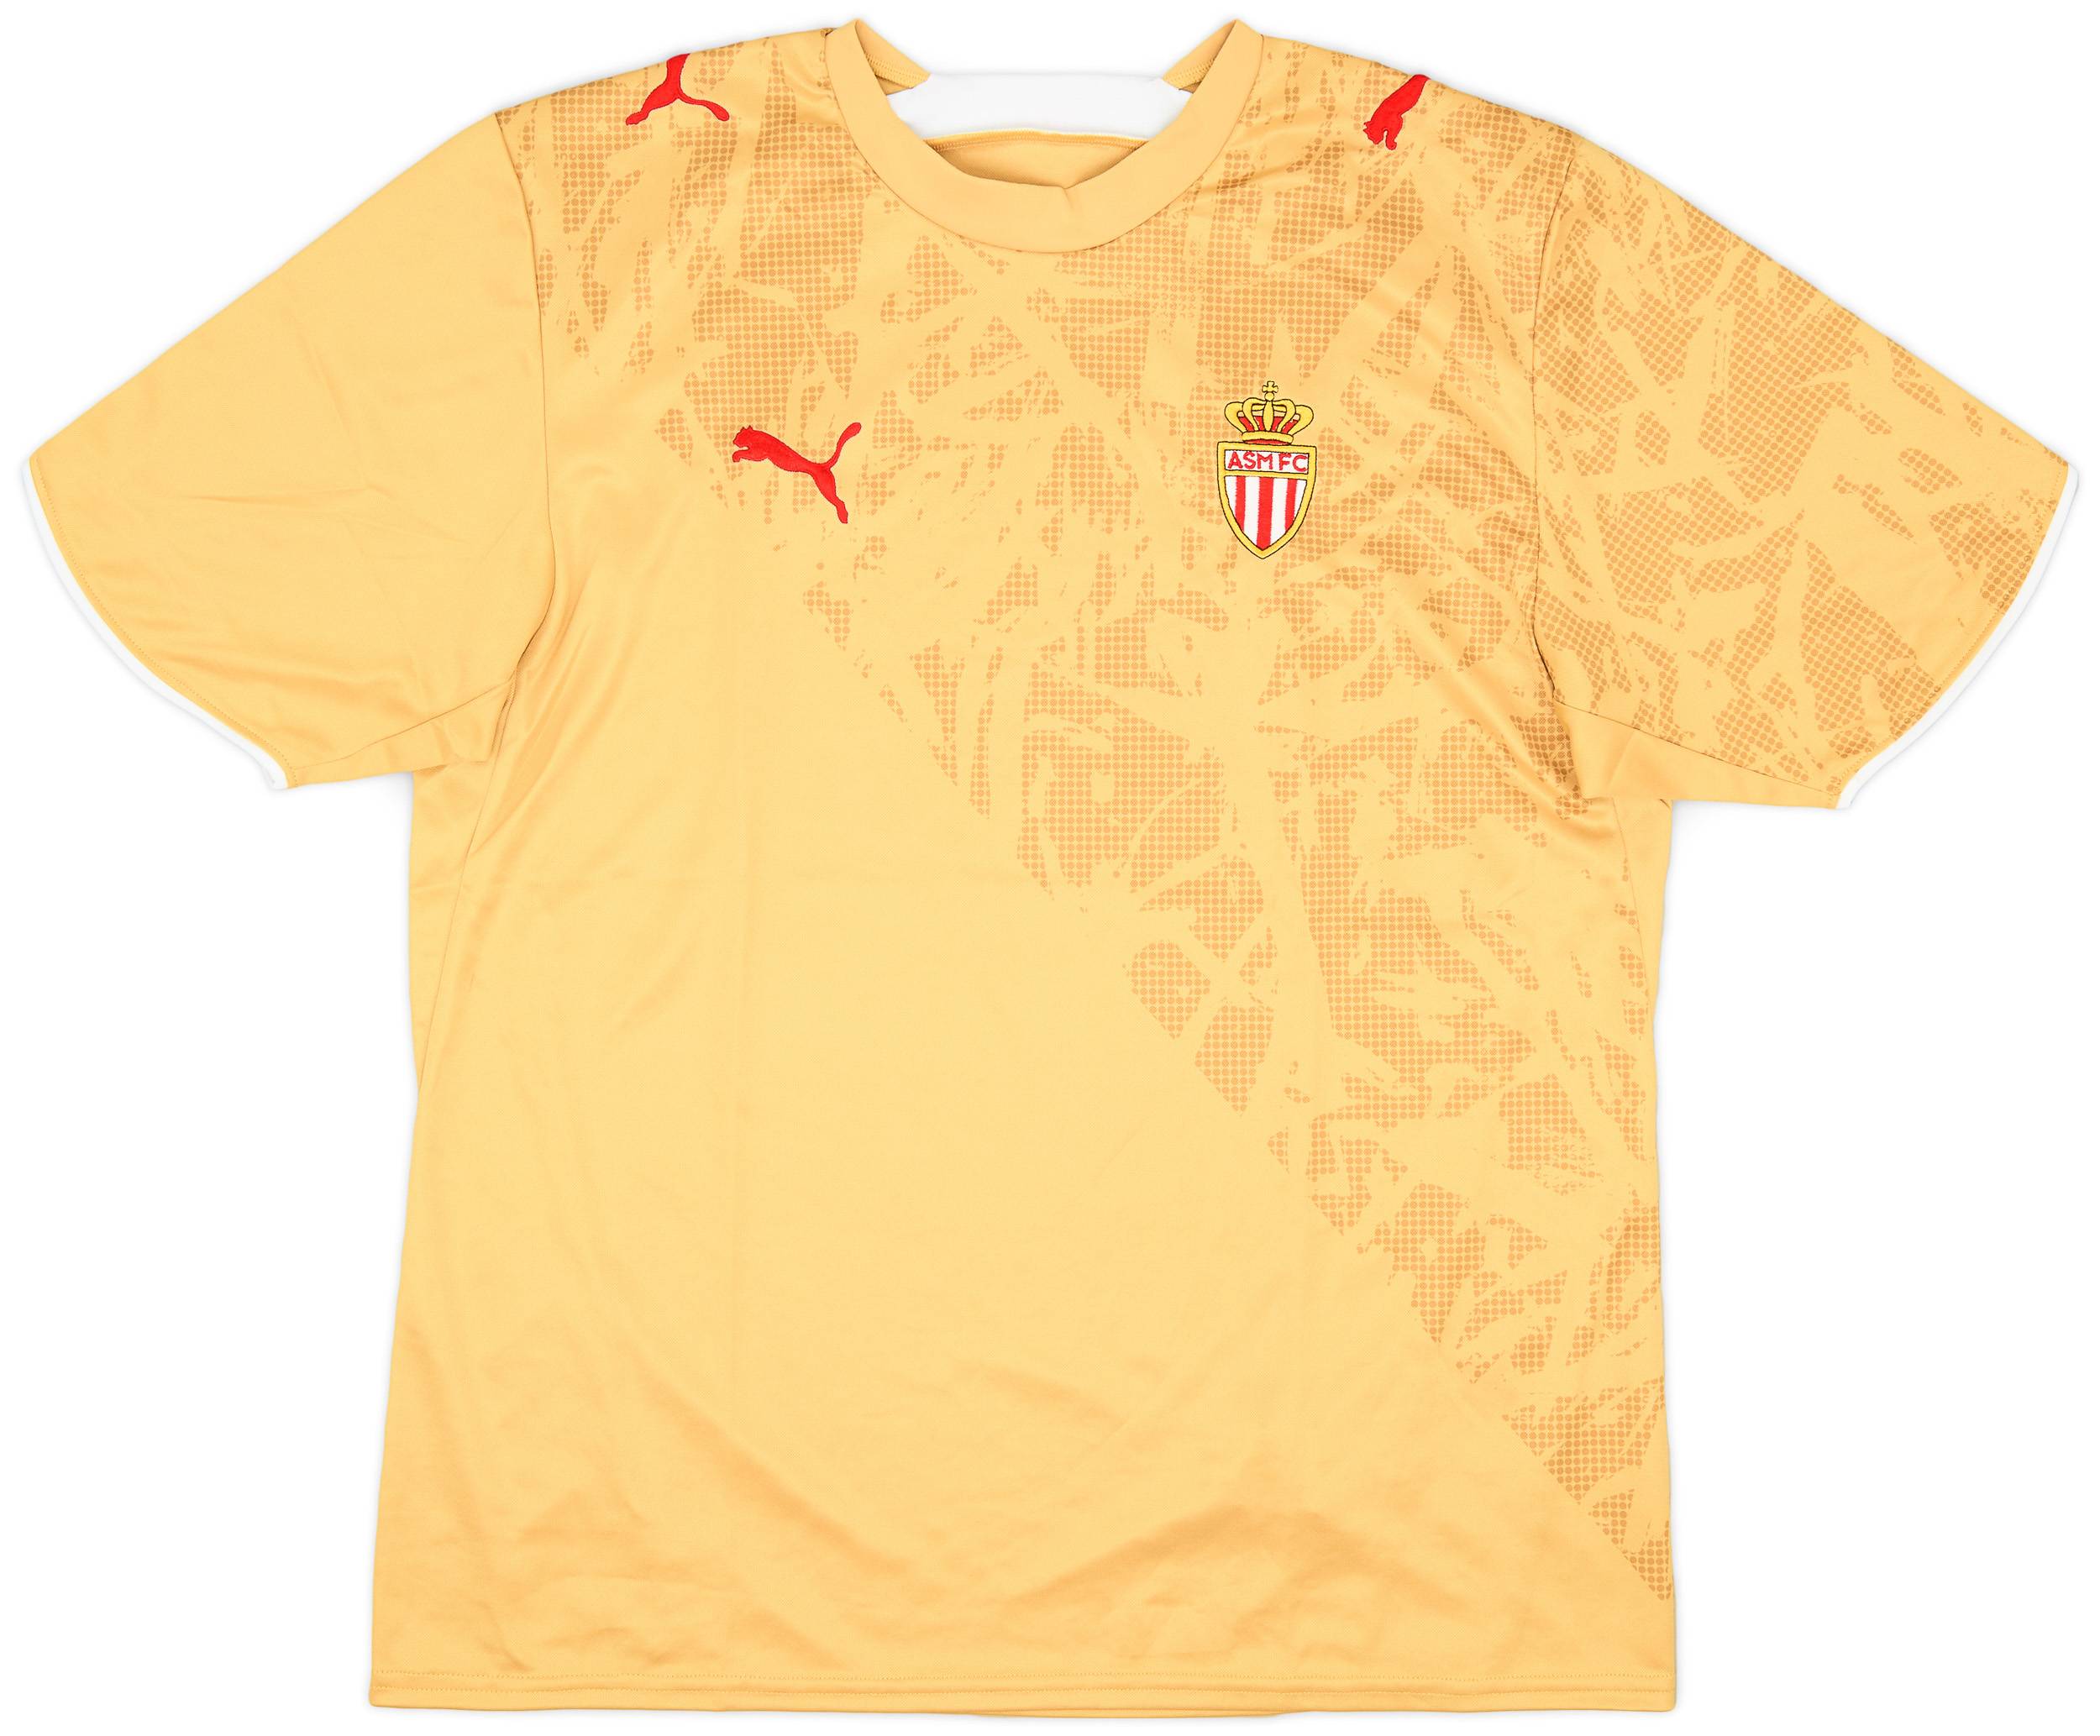 2006-07 Monaco Away Shirt - 9/10 - (L)